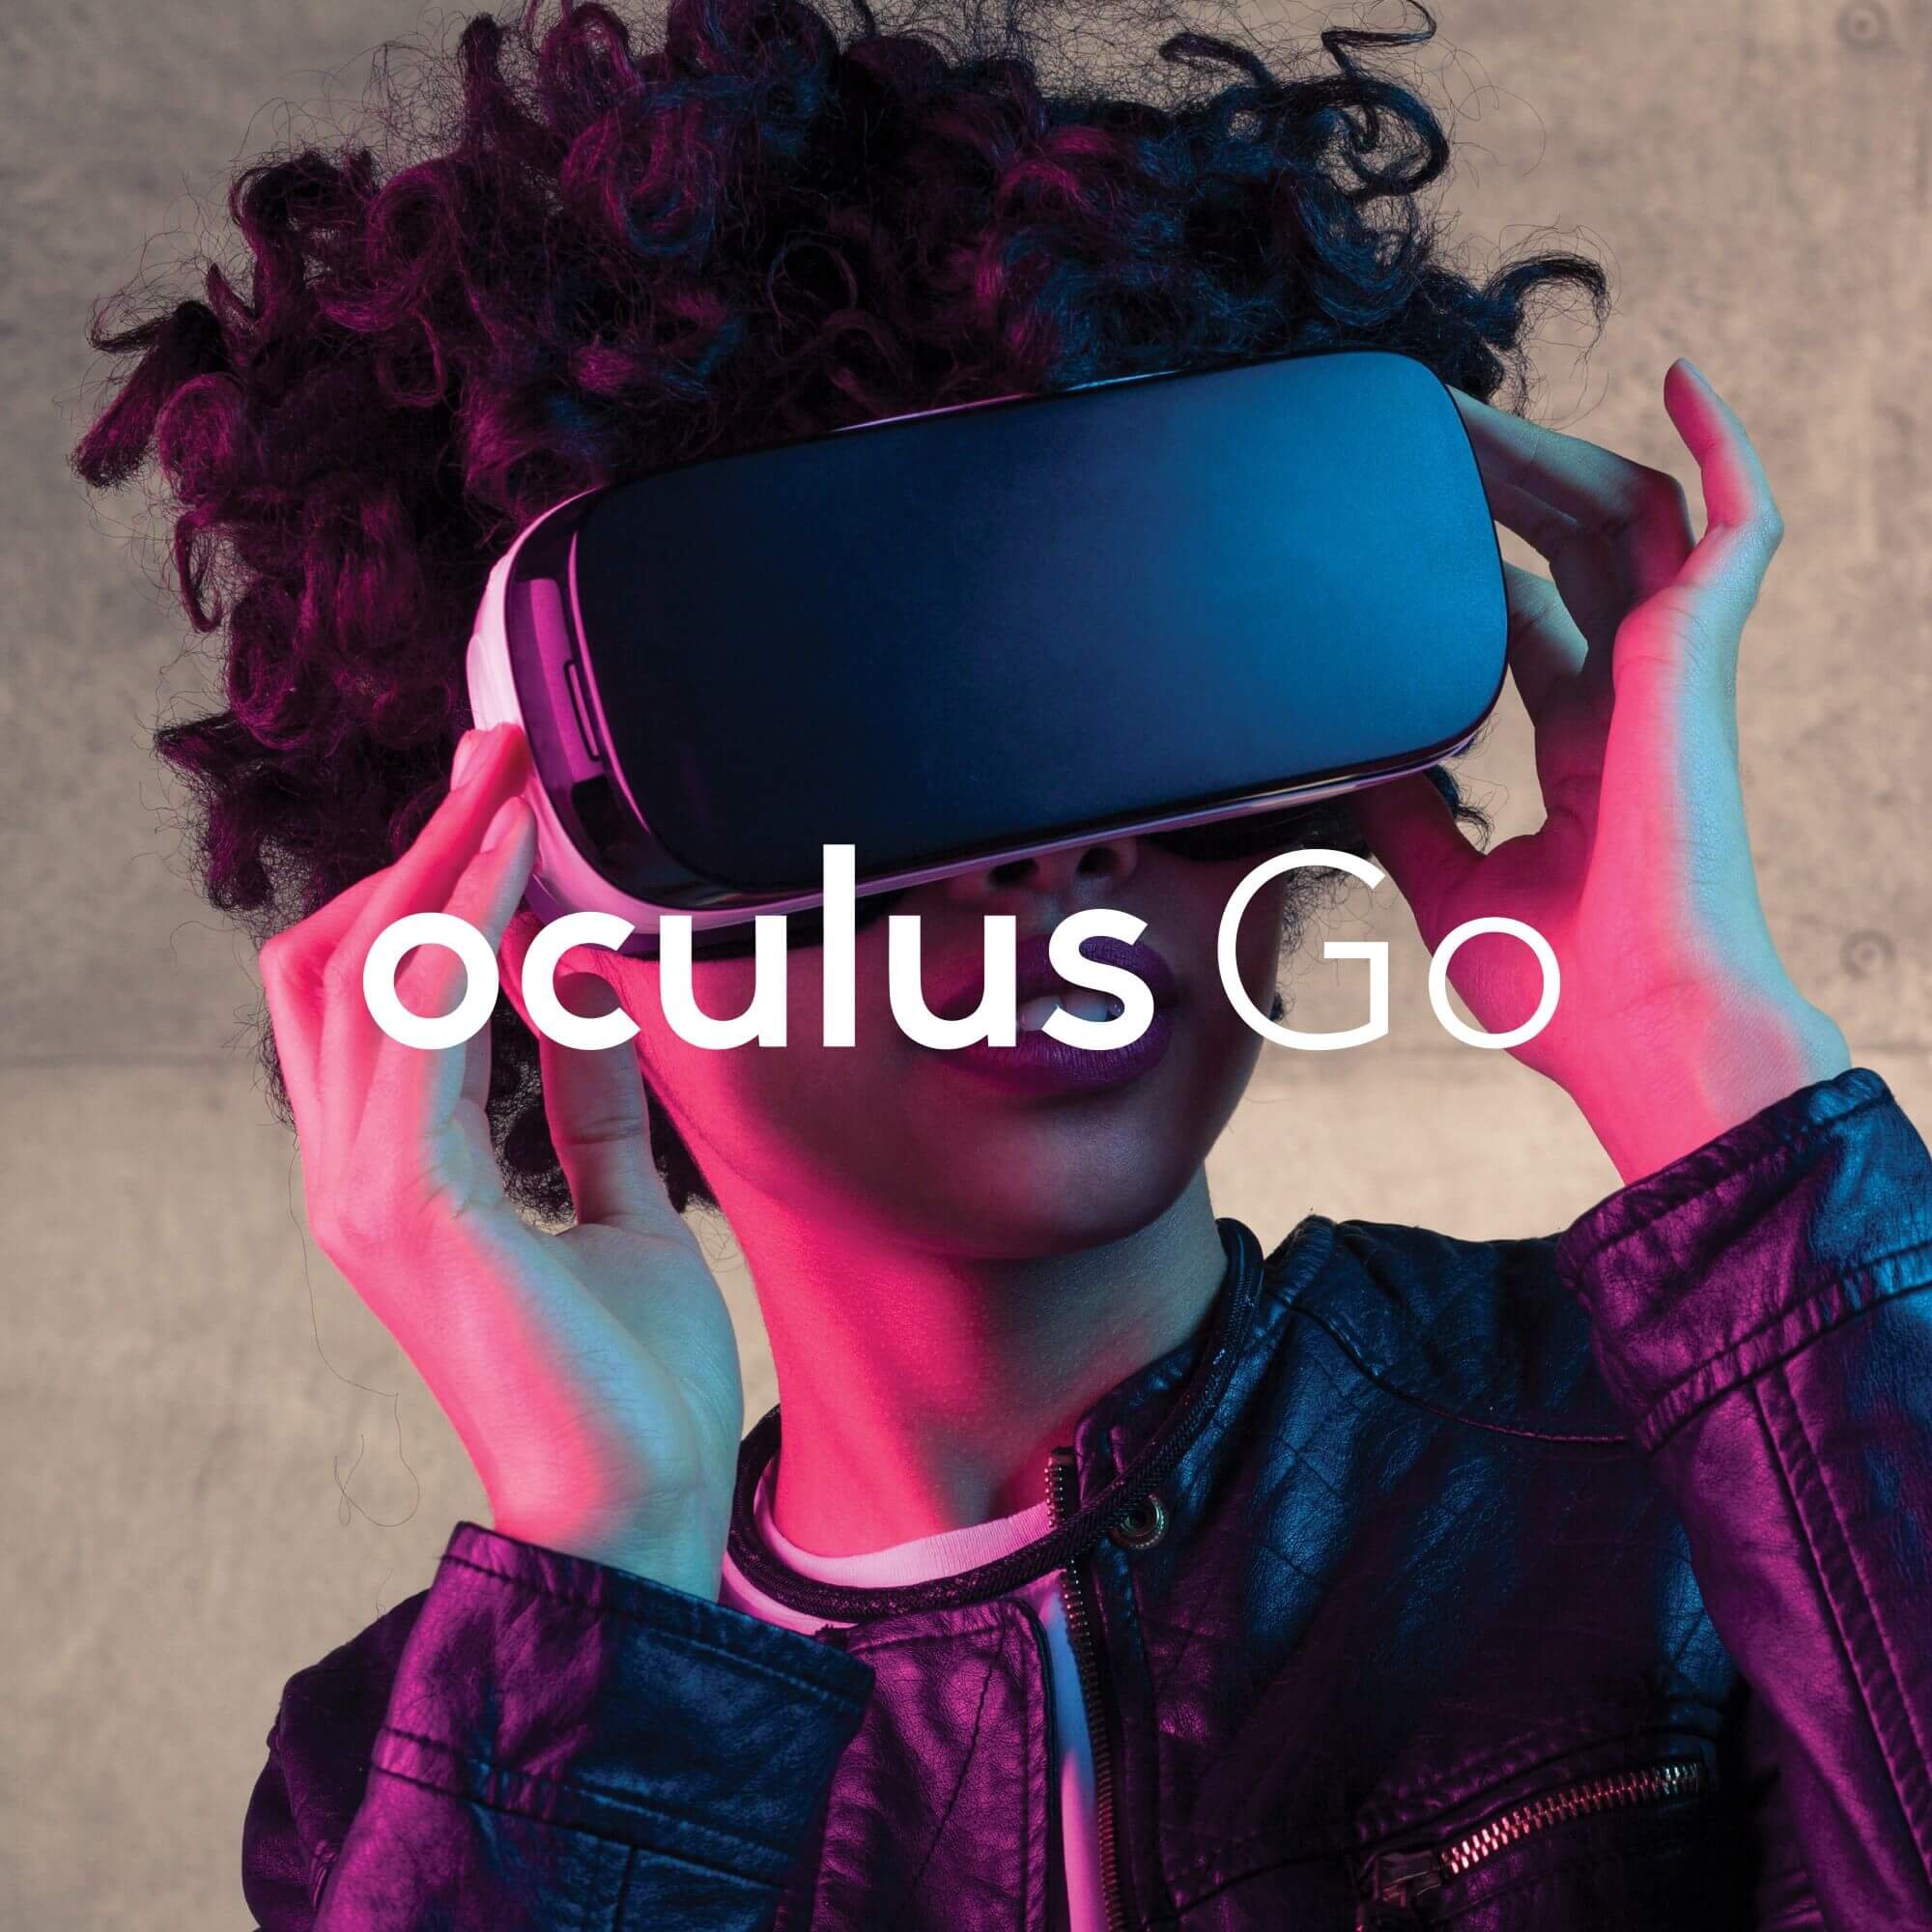 Oculus Go (Oculus)